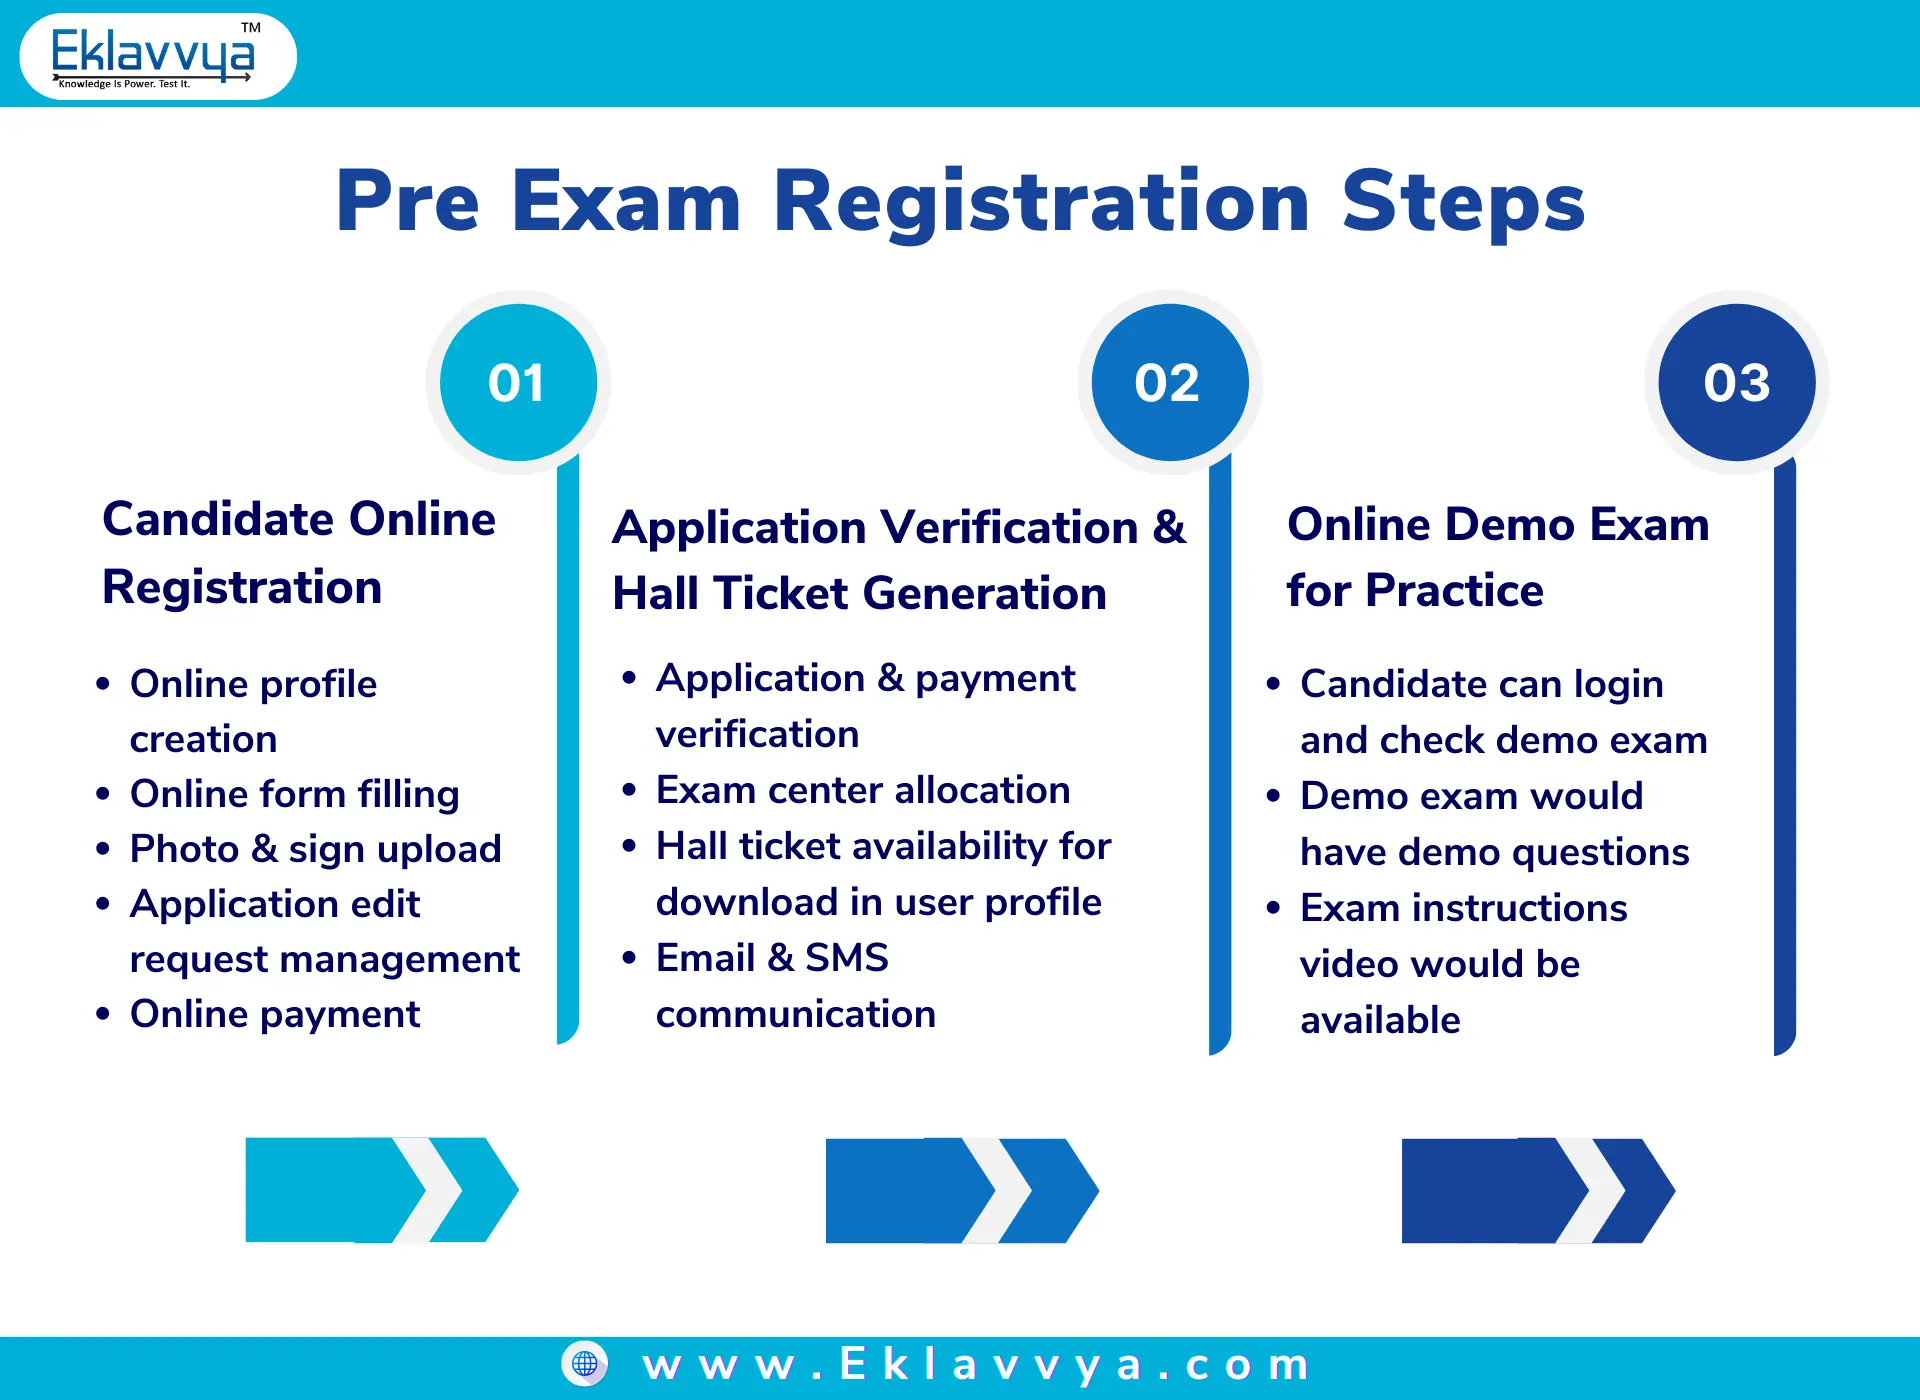 Pre exam registration steps